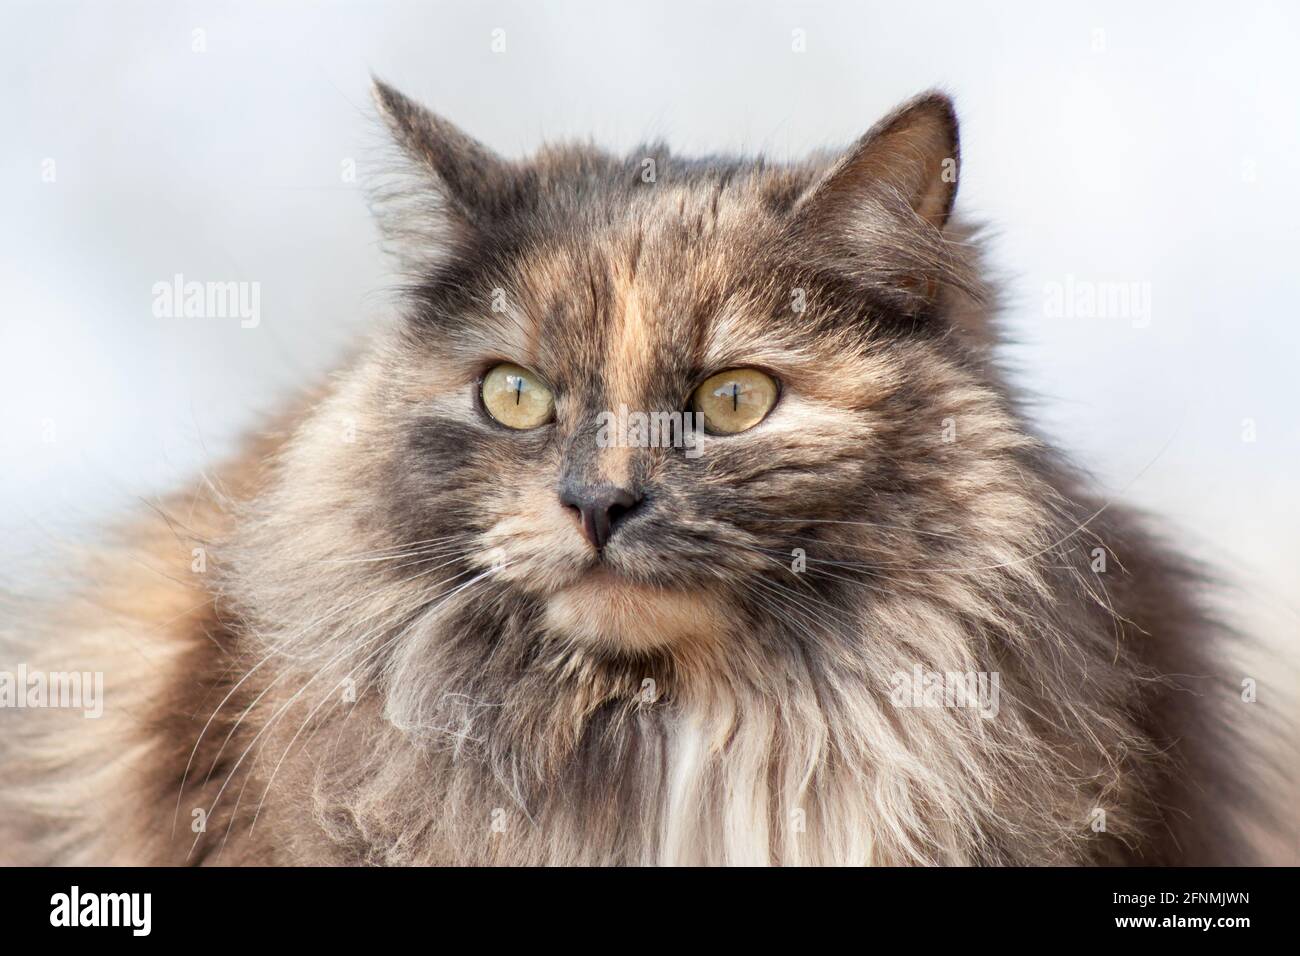 Ritratto di un soffice gatto grigio, zenzero e bianco con occhi gialli all'aperto. Grave capelli lunghi gatto femmina adulto grande su sfondo blu Foto Stock